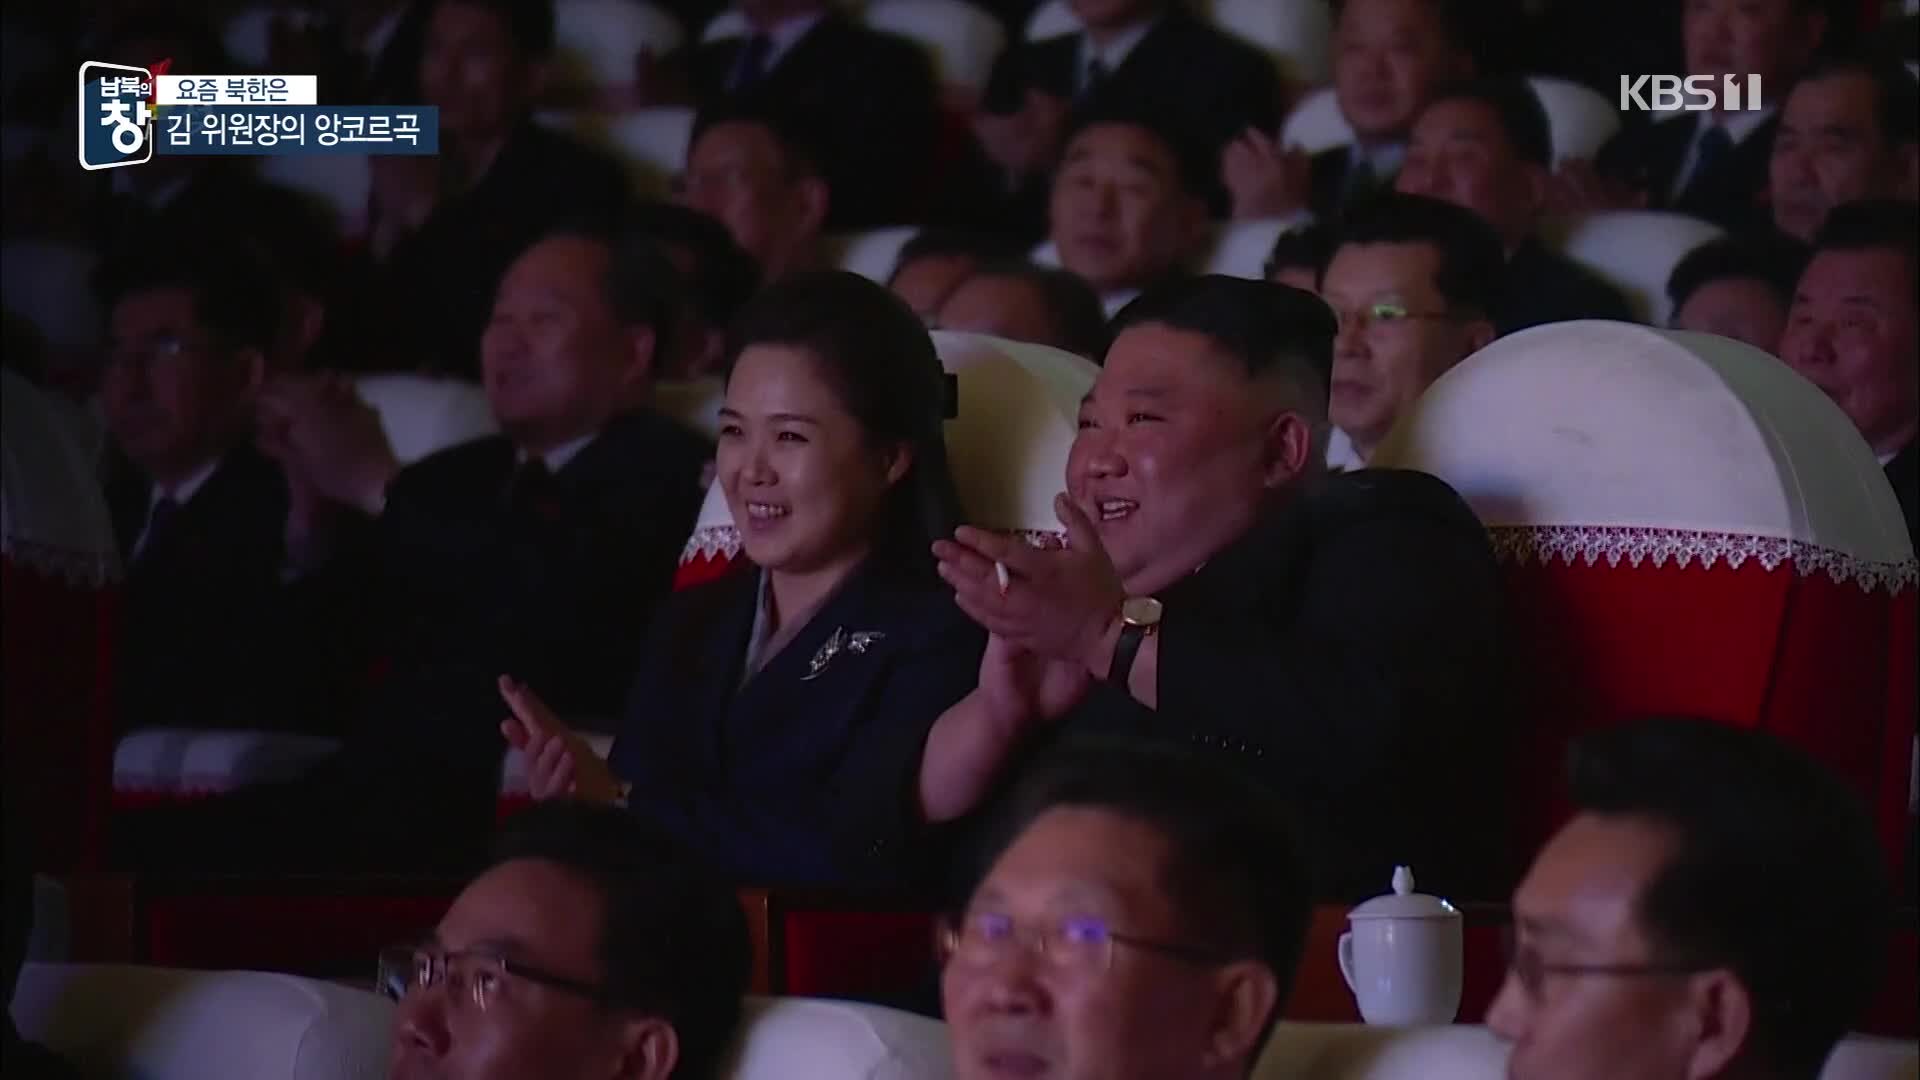 [요즘 북한은] 엄지 척에 앙코르까지…김정은 사로잡은 노래는? 외